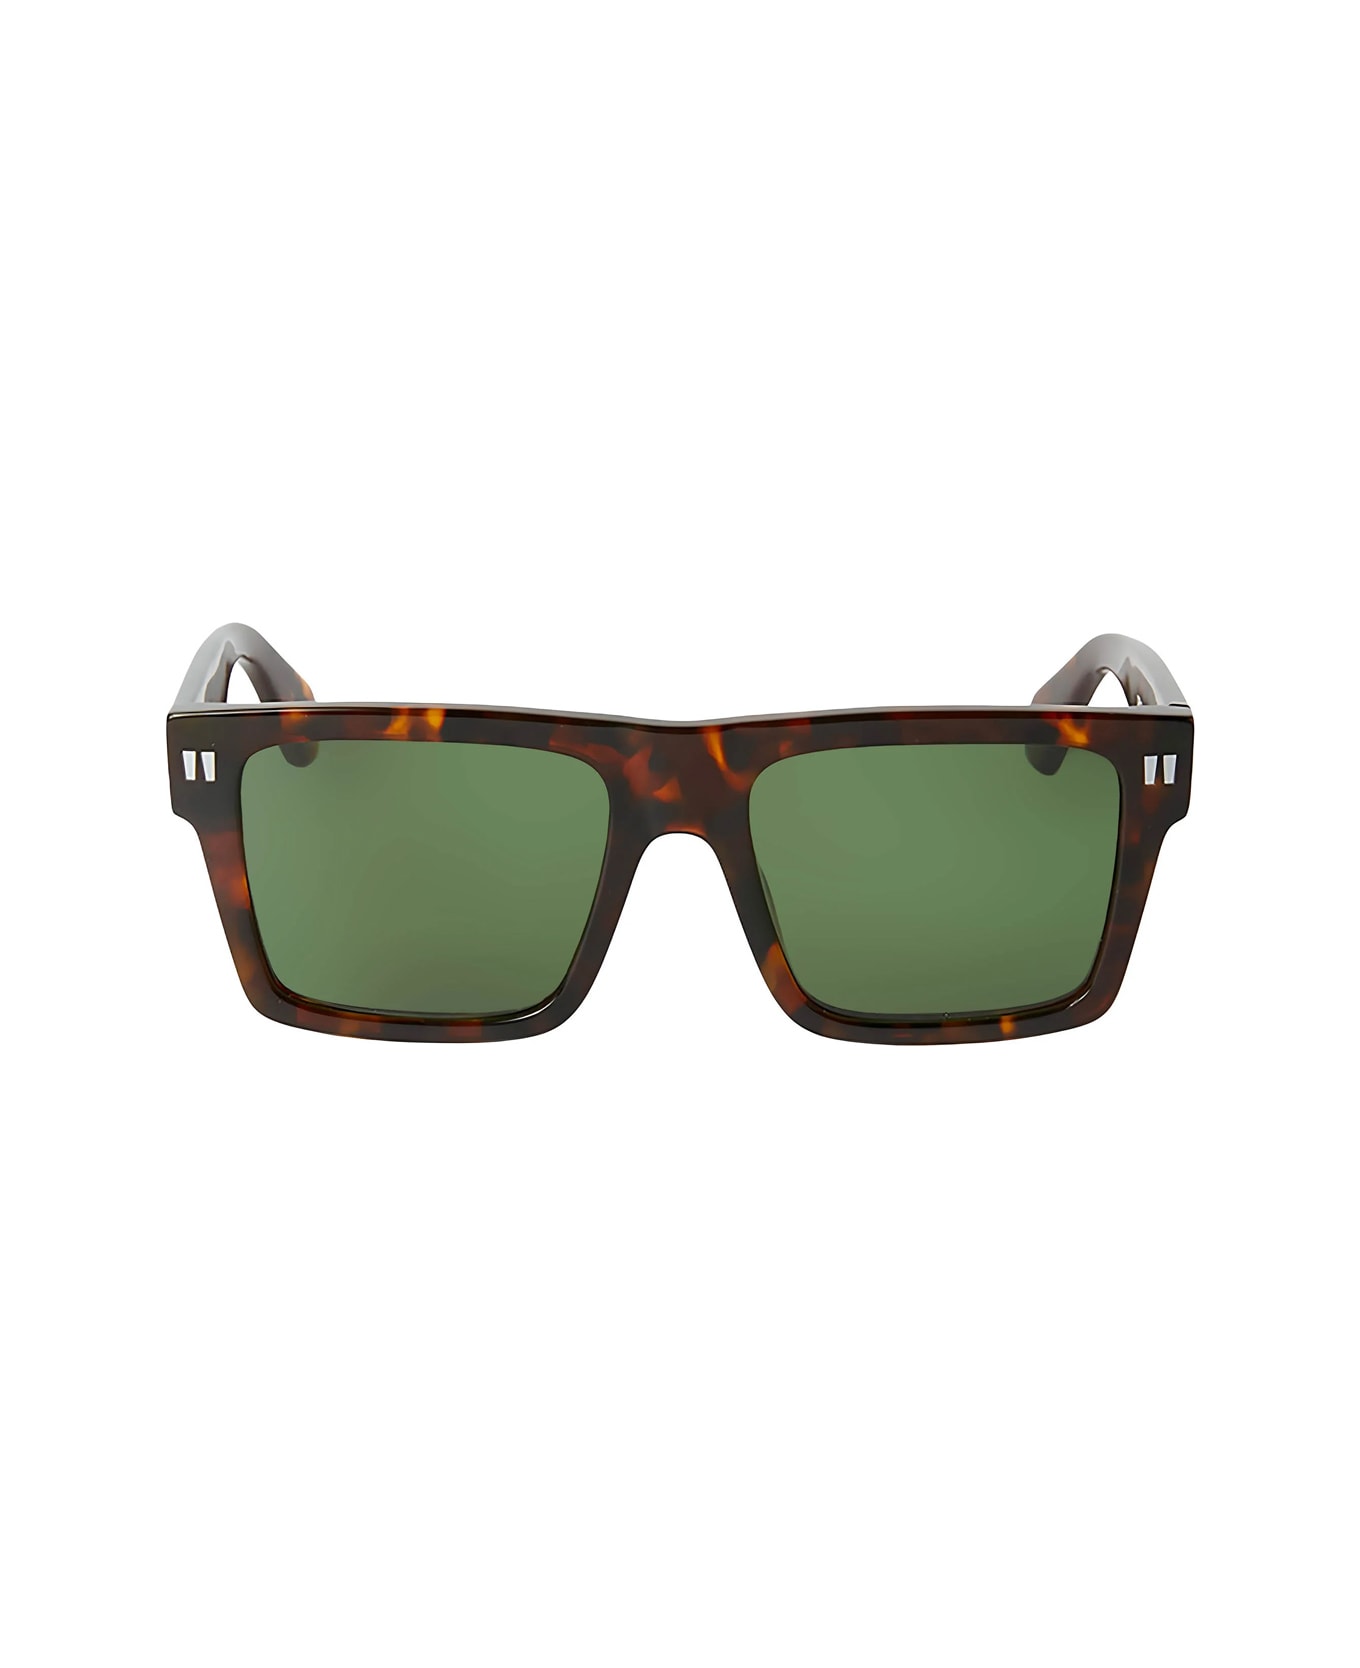 Off-White Oeri109 Lawton 6055 Havana Sunglasses - Marrone サングラス